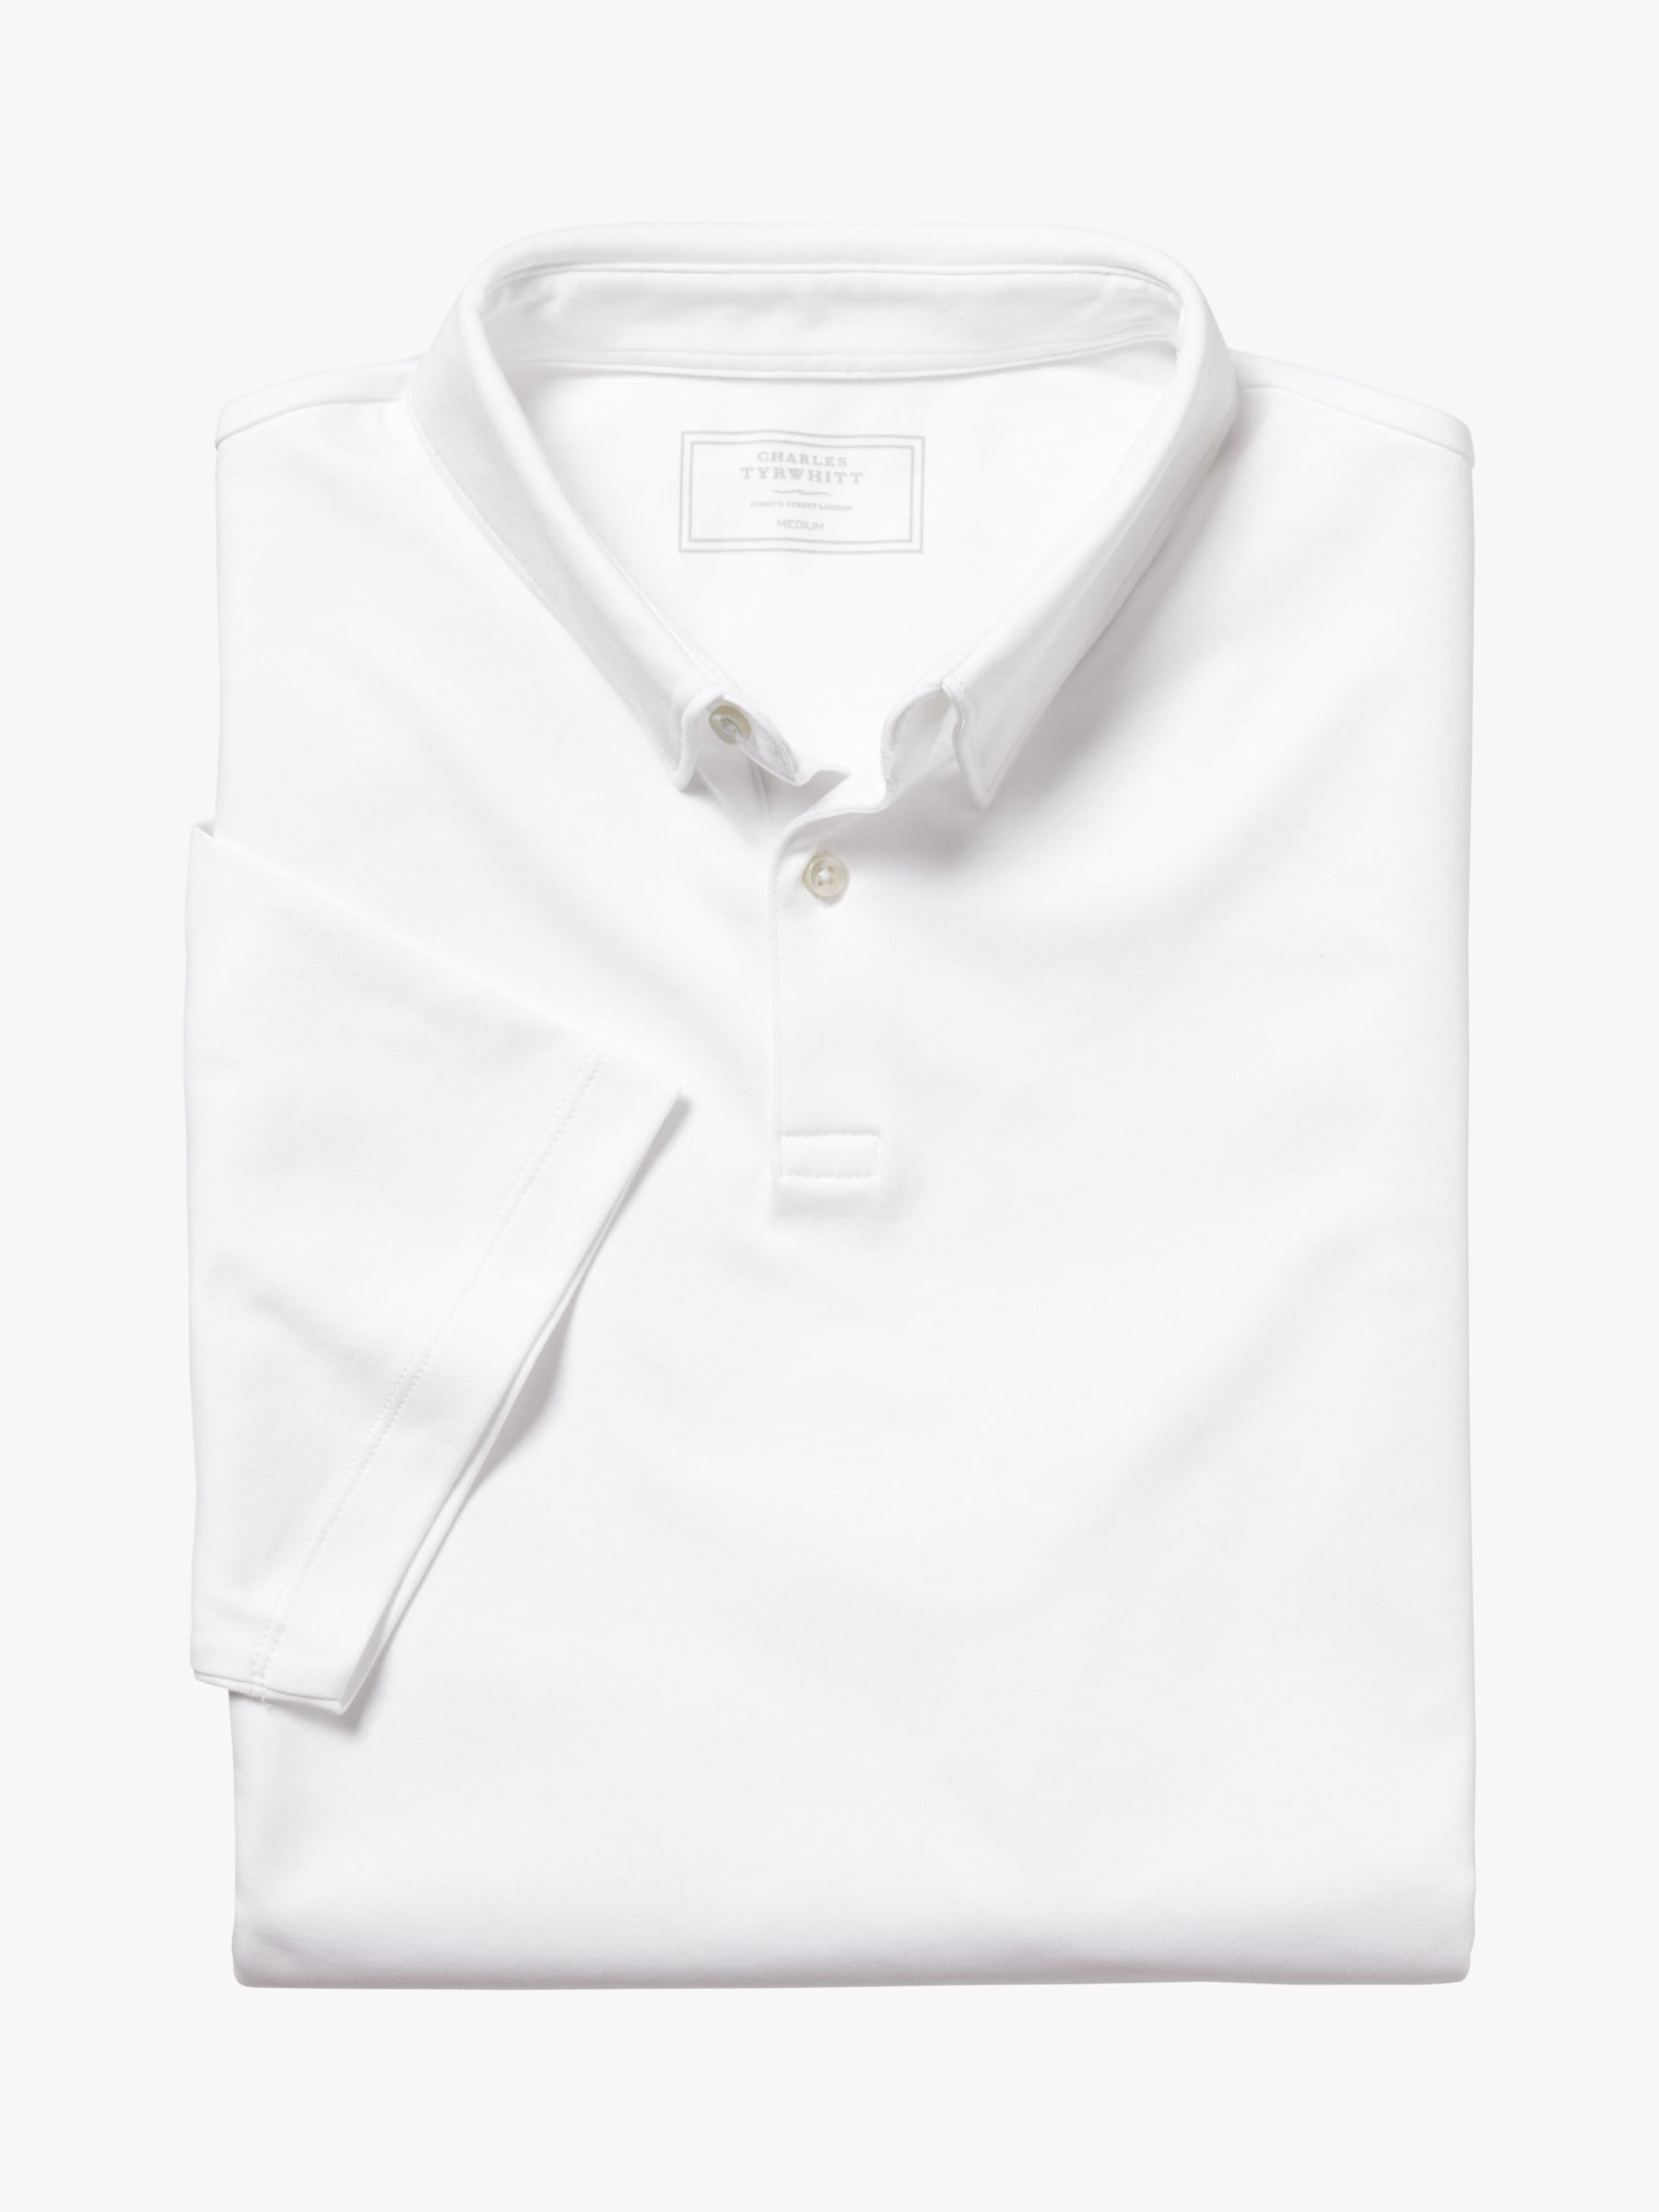 Charles Tyrwhitt Smart Jersey Short Sleeve Polo, White, M